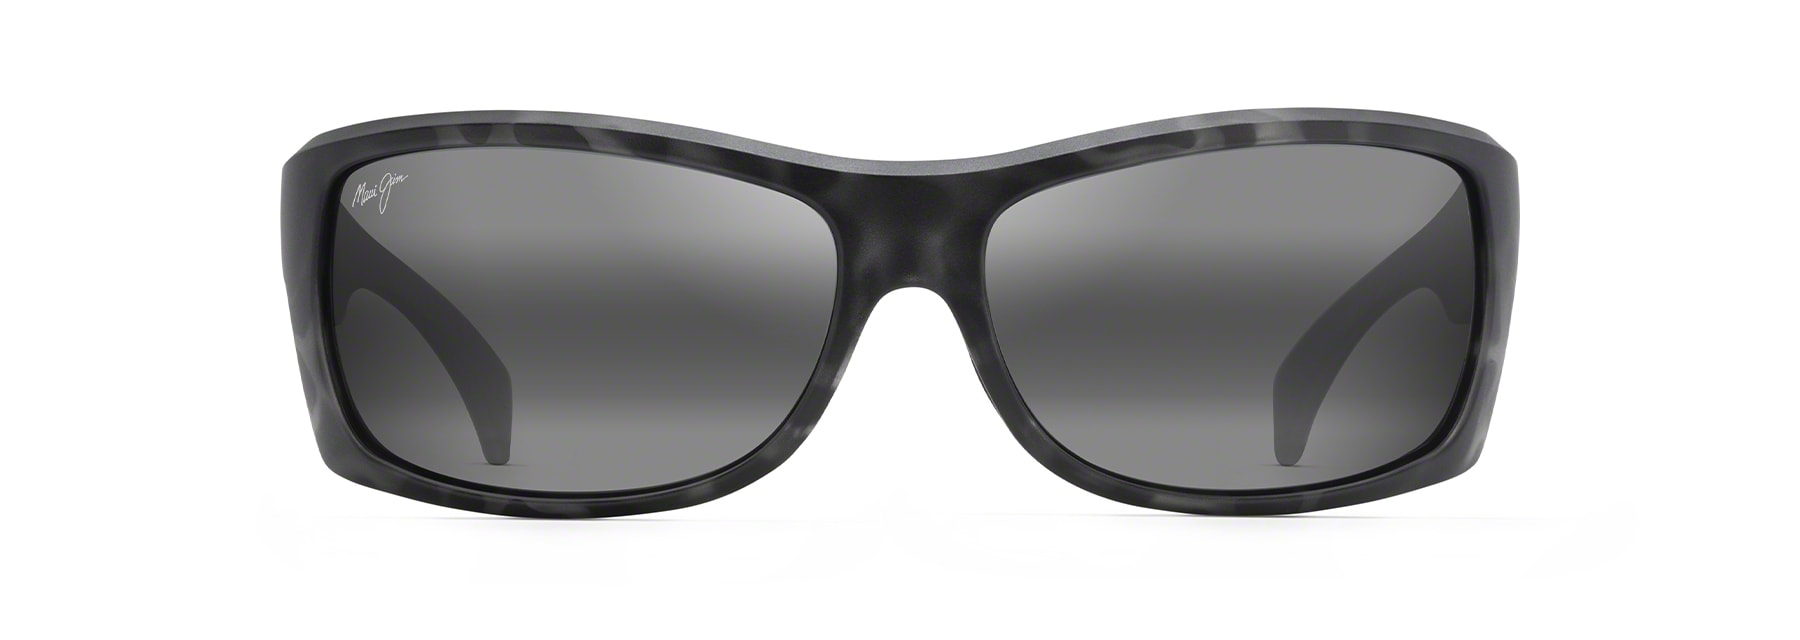 Unisex Durable Square Shape Sunglasses/Spectacle Frames